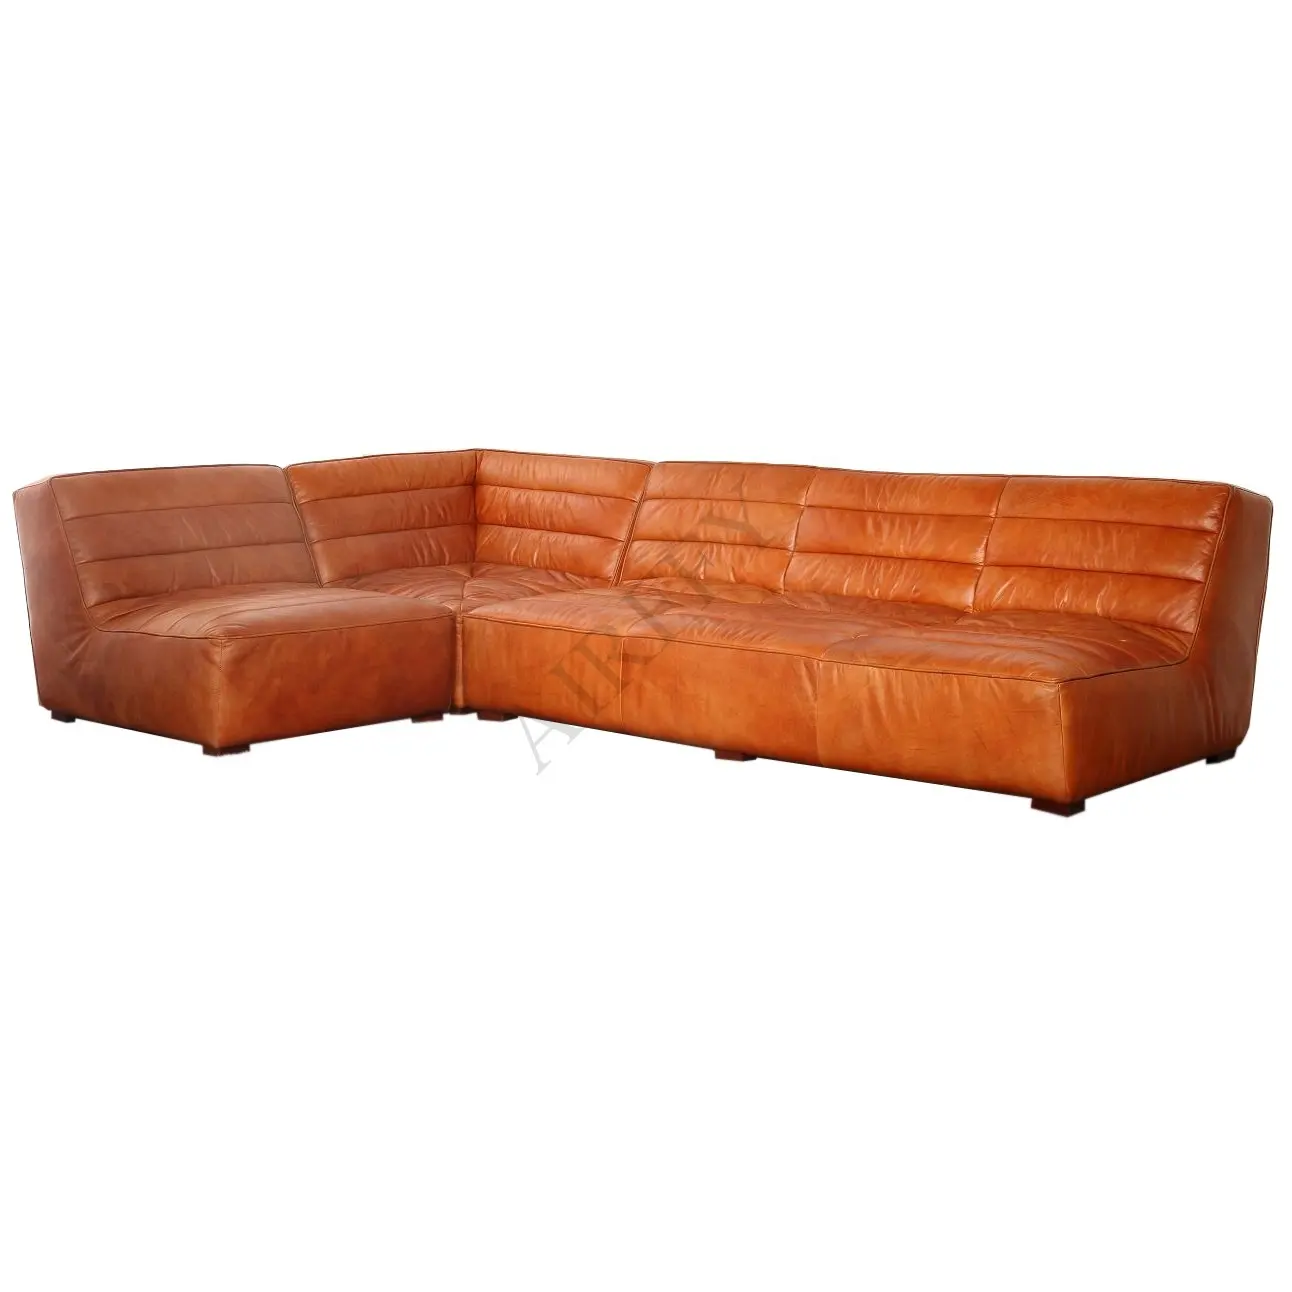 Vintage Red Orange Leather L Corner Sectional Sofa set for Villa Living room Hotel Club Furniture